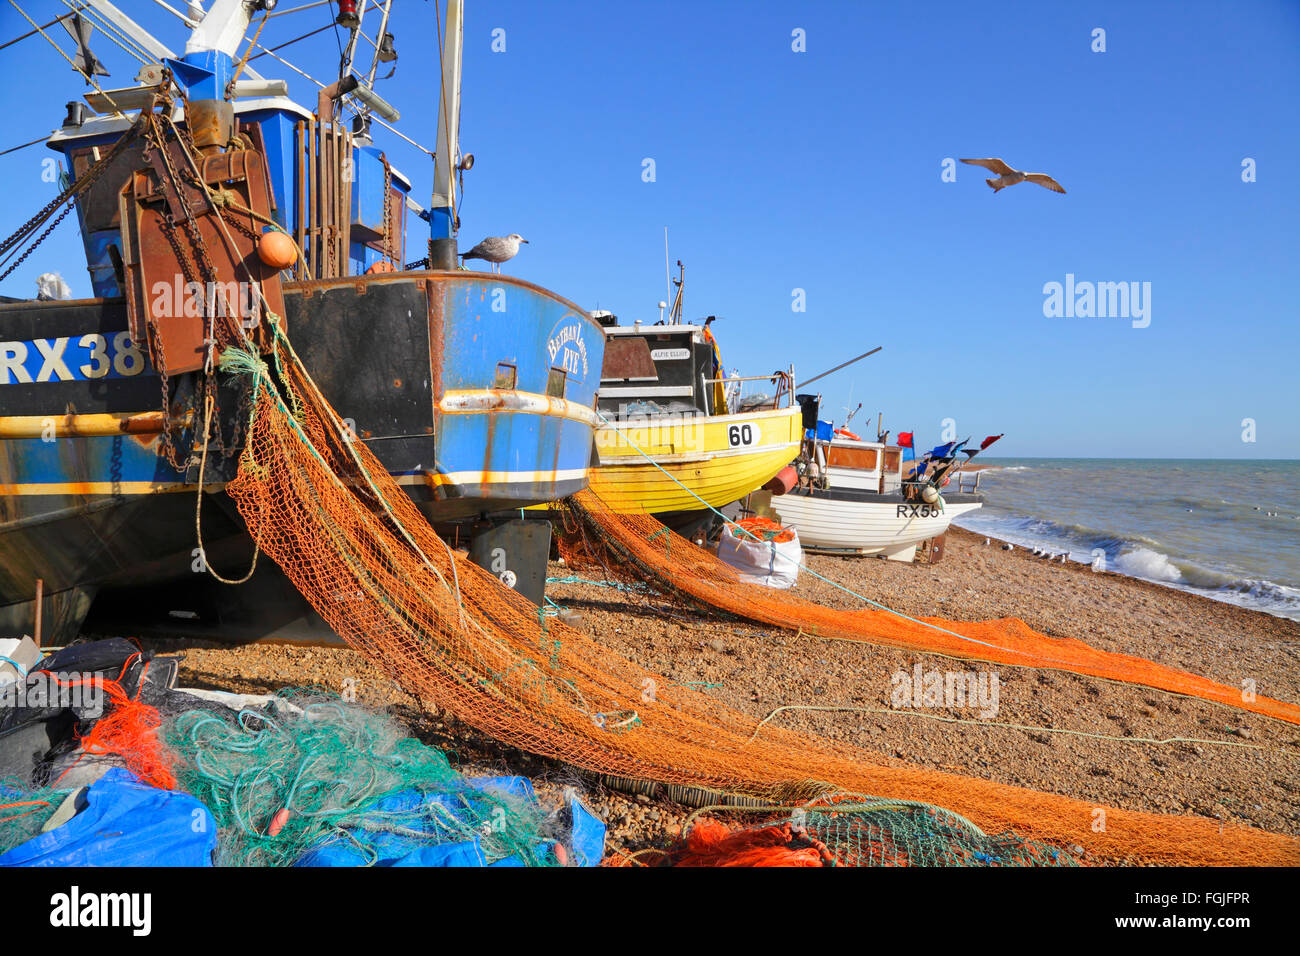 Hastings Royaume-Uni. Bateaux de pêche avec filets colorés se séchant sur la vieille ville Stade, la plage des pêcheurs, East Sussex, Angleterre, GB Banque D'Images